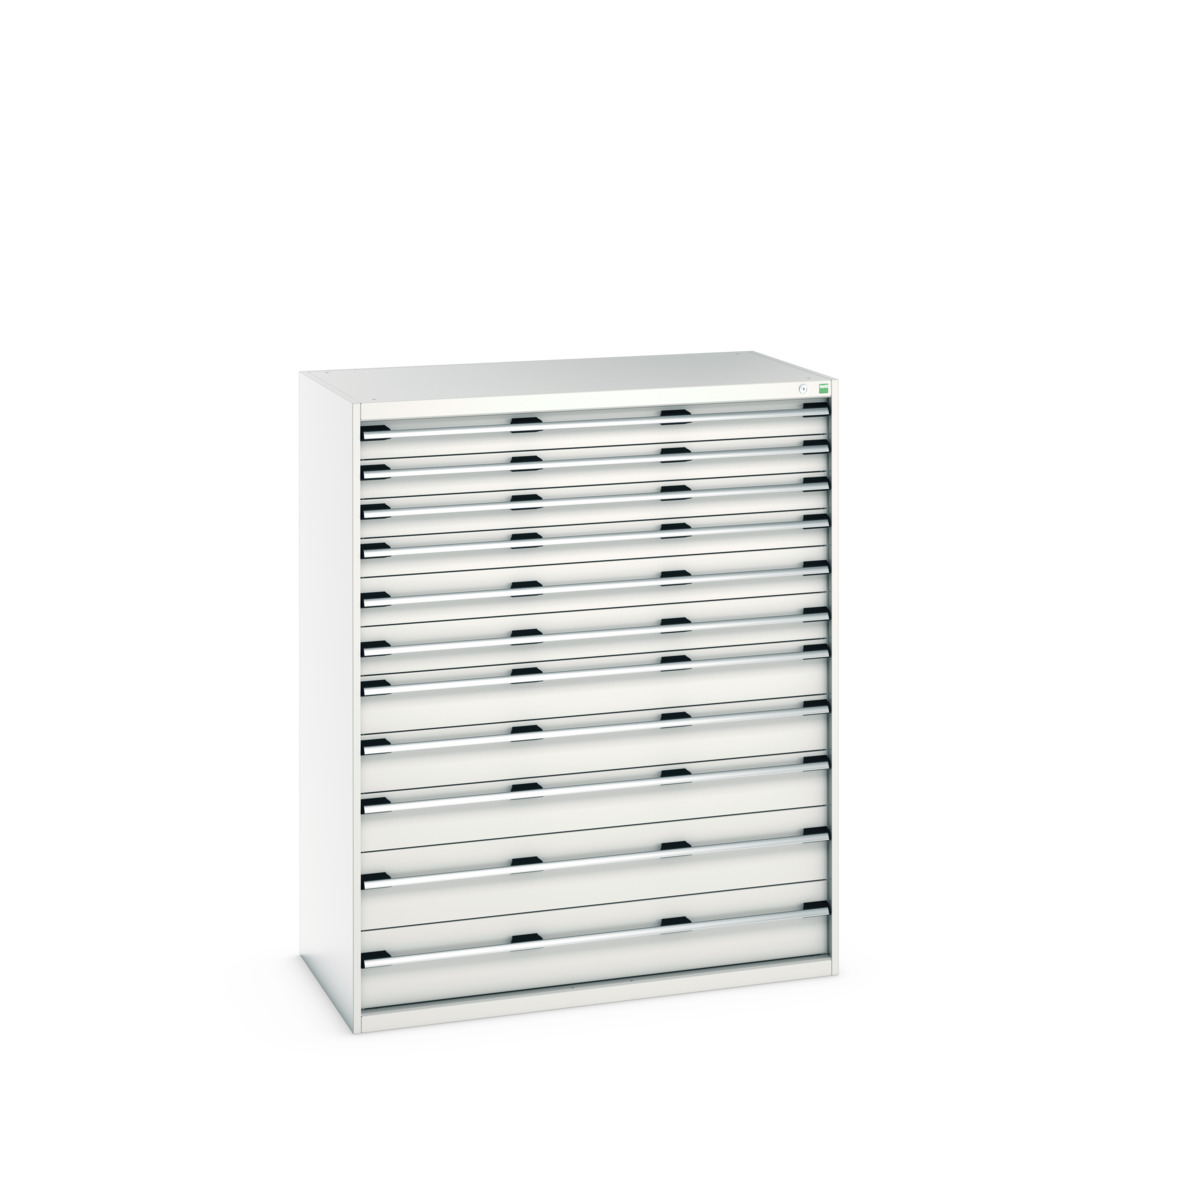 40030030.16V - cubio drawer cabinet